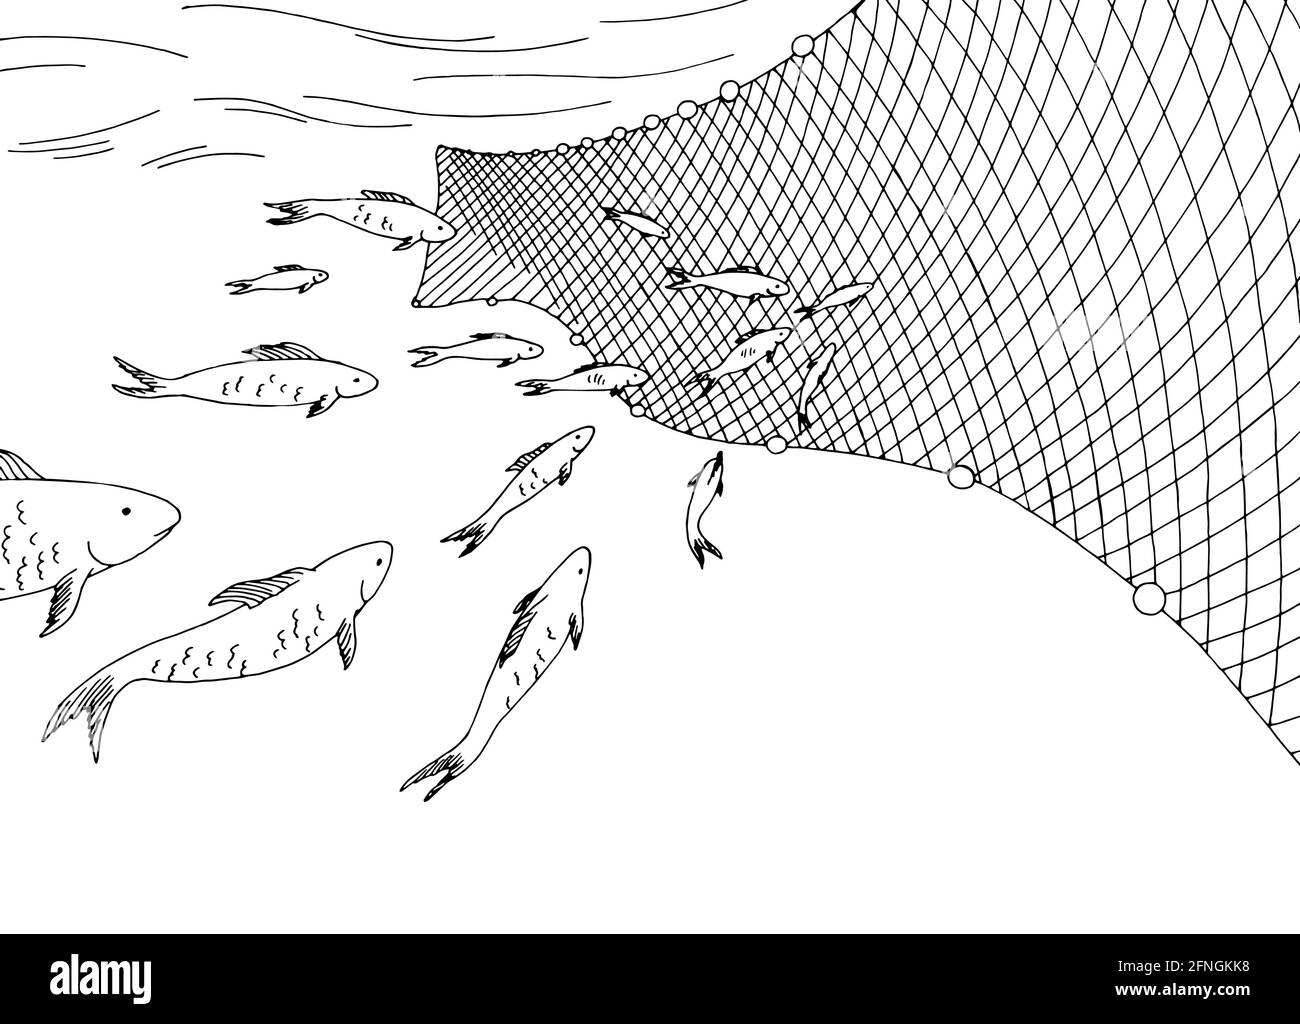 École de poissons se déplaçant dans la mer graphique de filet de pêche vecteur d'illustration d'esquisse noir et blanc Illustration de Vecteur